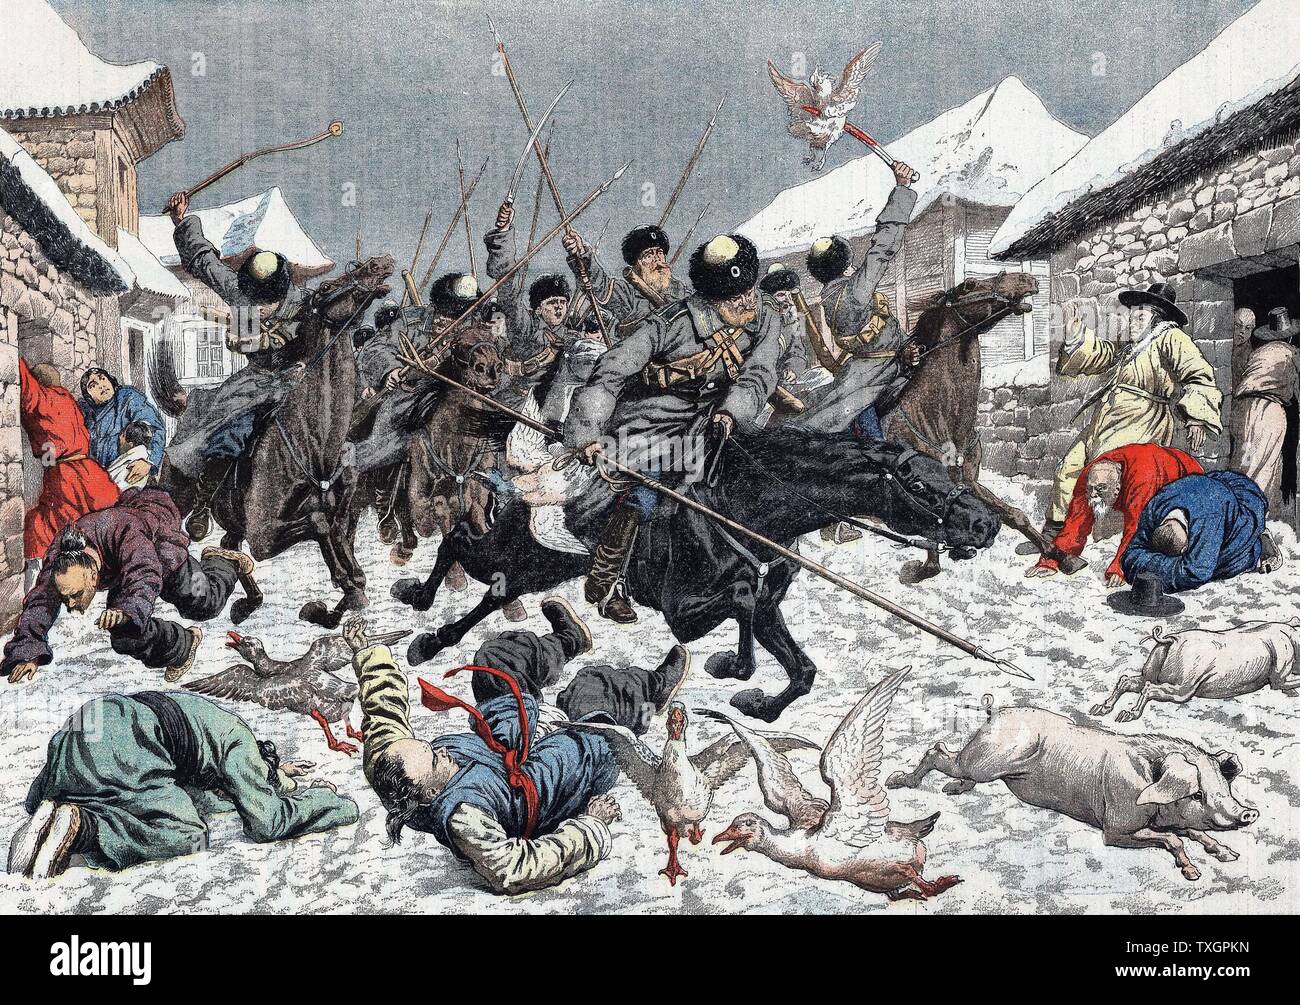 Guerra Ruso-Japonesa 1904-1905, saqueadores de los cosacos en una aldea coreana aterrorizando a la población local el 27 de marzo de 1904 de "Le Petit Journal" Paris Foto de stock